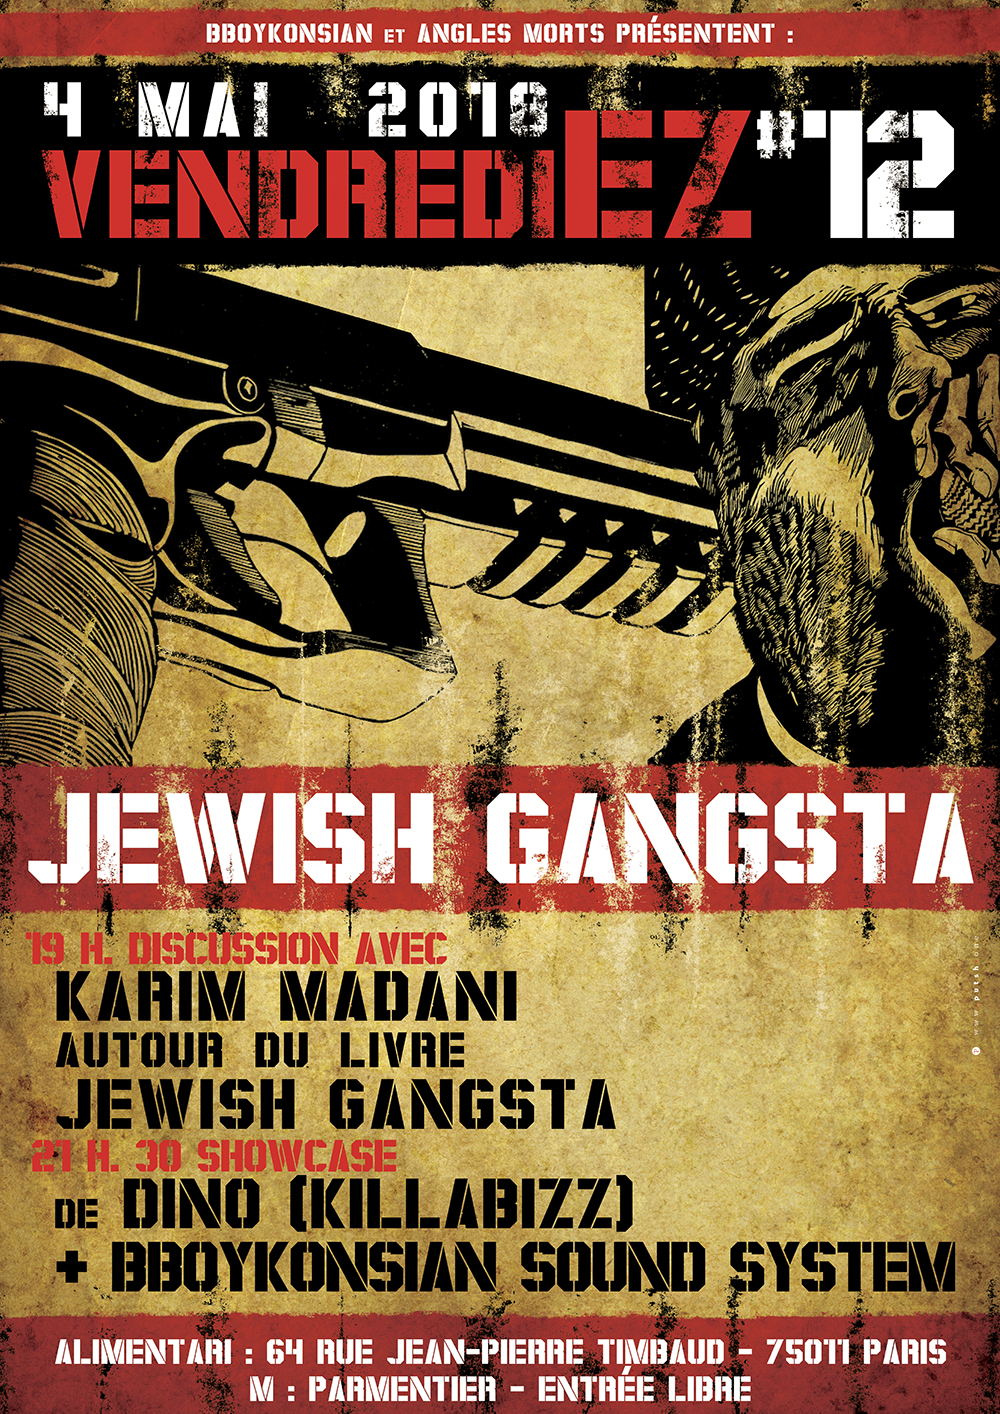 Discussion autour du livre "Jewish gangsta" + BBoyKonsian Sound System à Paris le 04 mai 2018